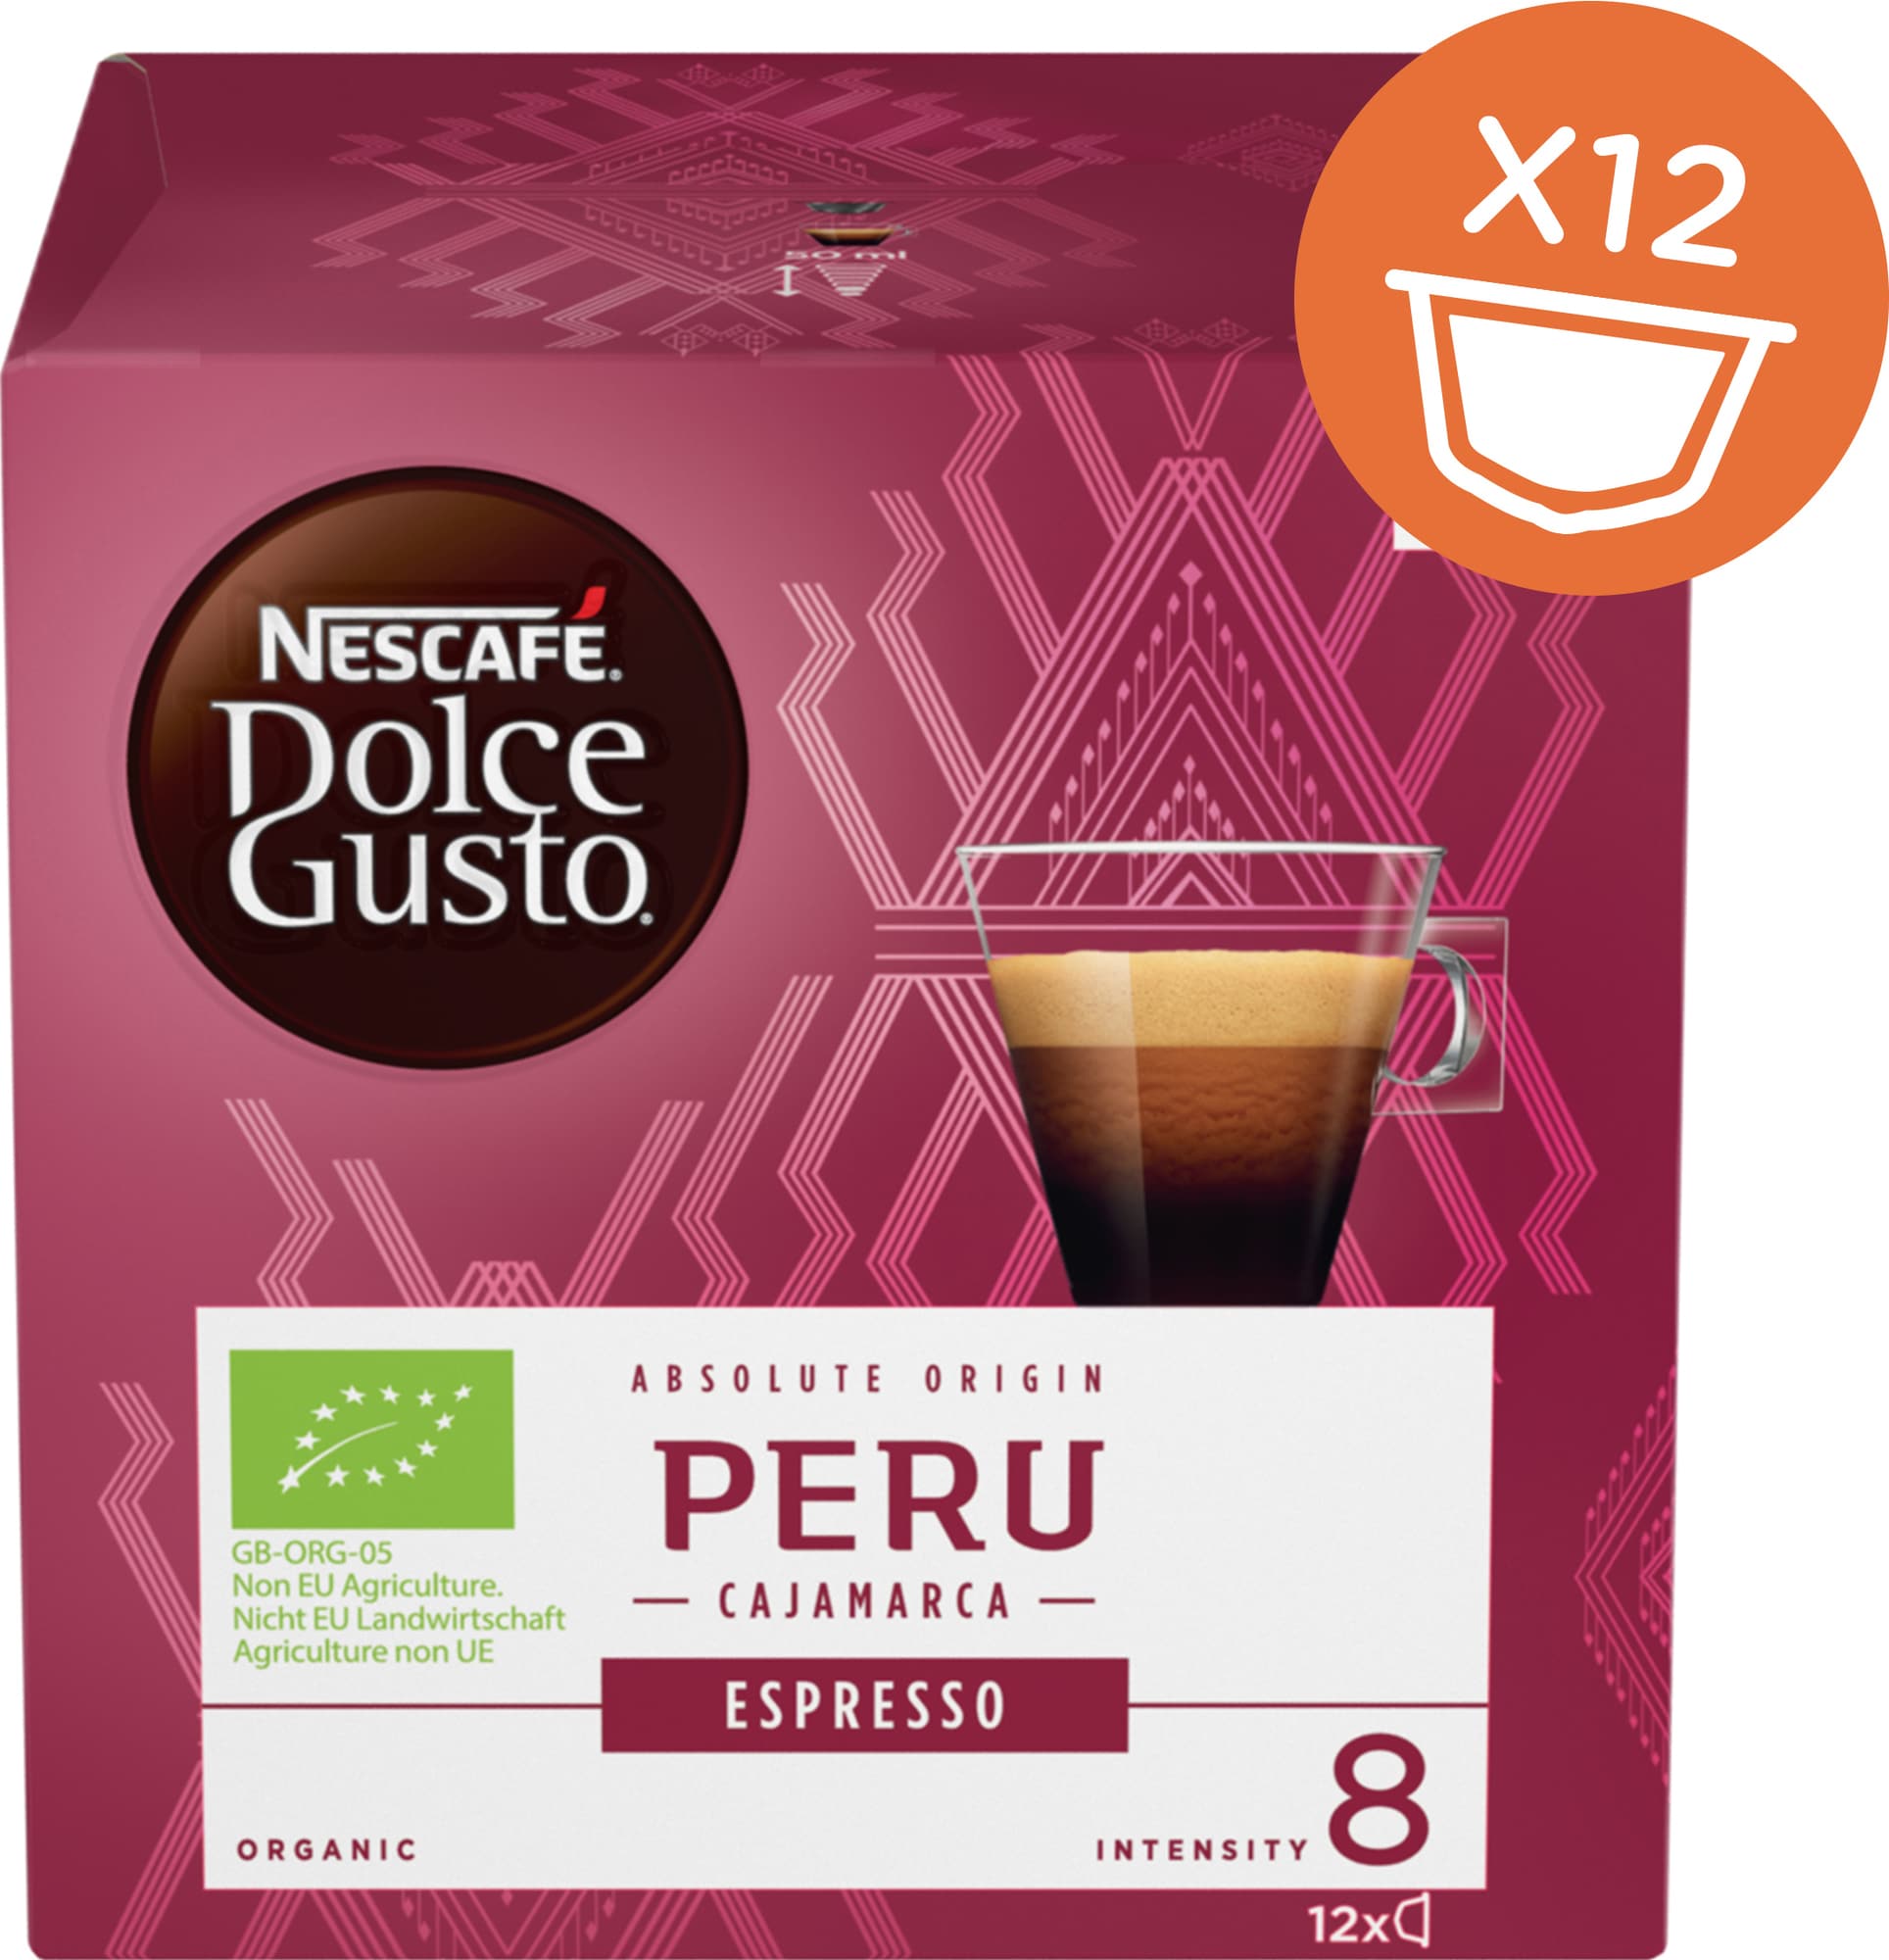 Nescafe Dolce Gusto Peru Espresso Organic thumbnail